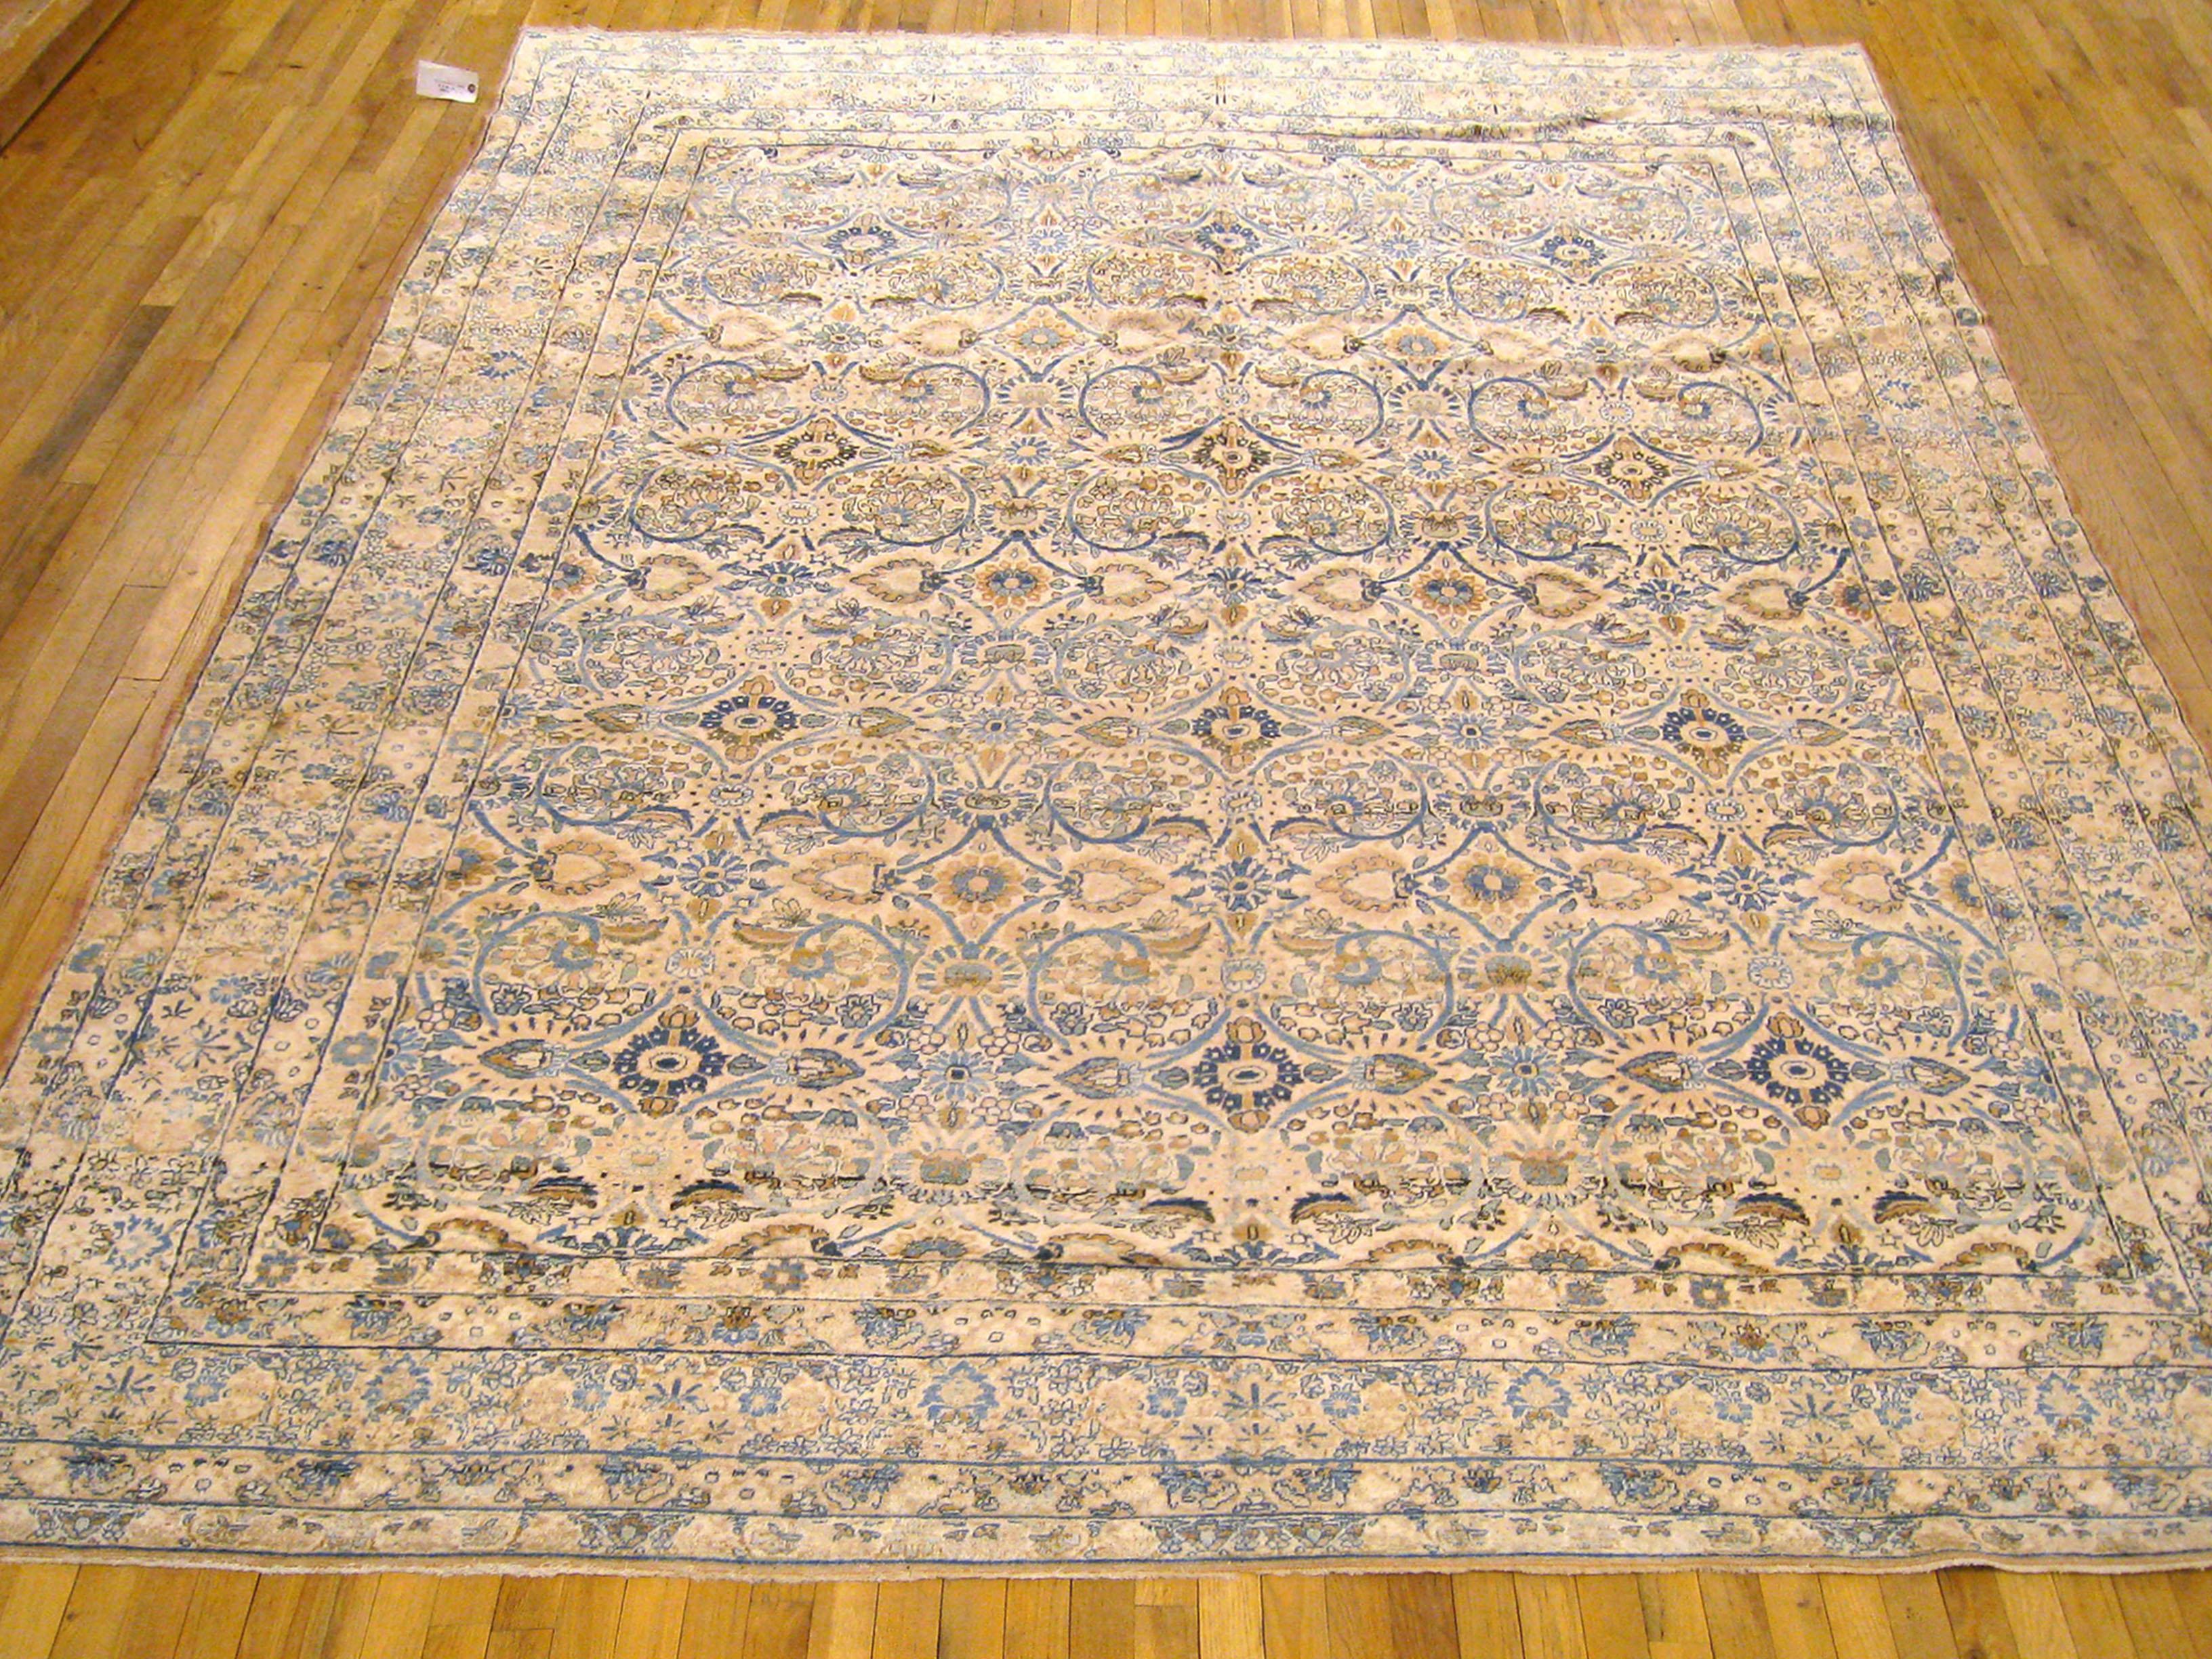 Antique Persian Lavar oriental carpet, Room Size, circa 1900

An antique Persian Lavar oriental carpet, size: 11'1